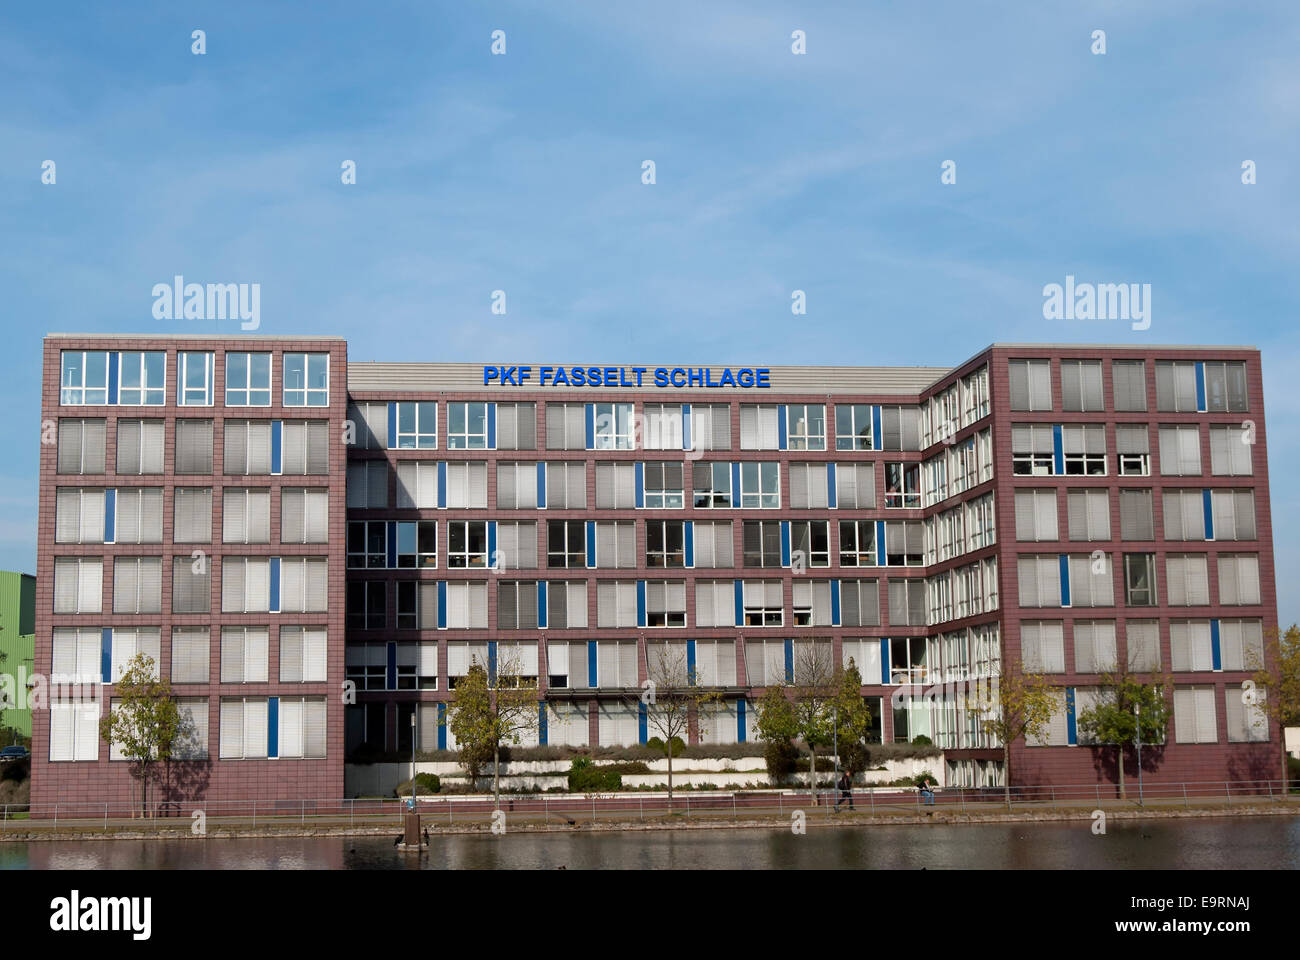 Bureaux de vérification et de conseil pkf société fasselt schlage, sur le port intérieur, ou innenhafen, Duisburg, Allemagne Banque D'Images